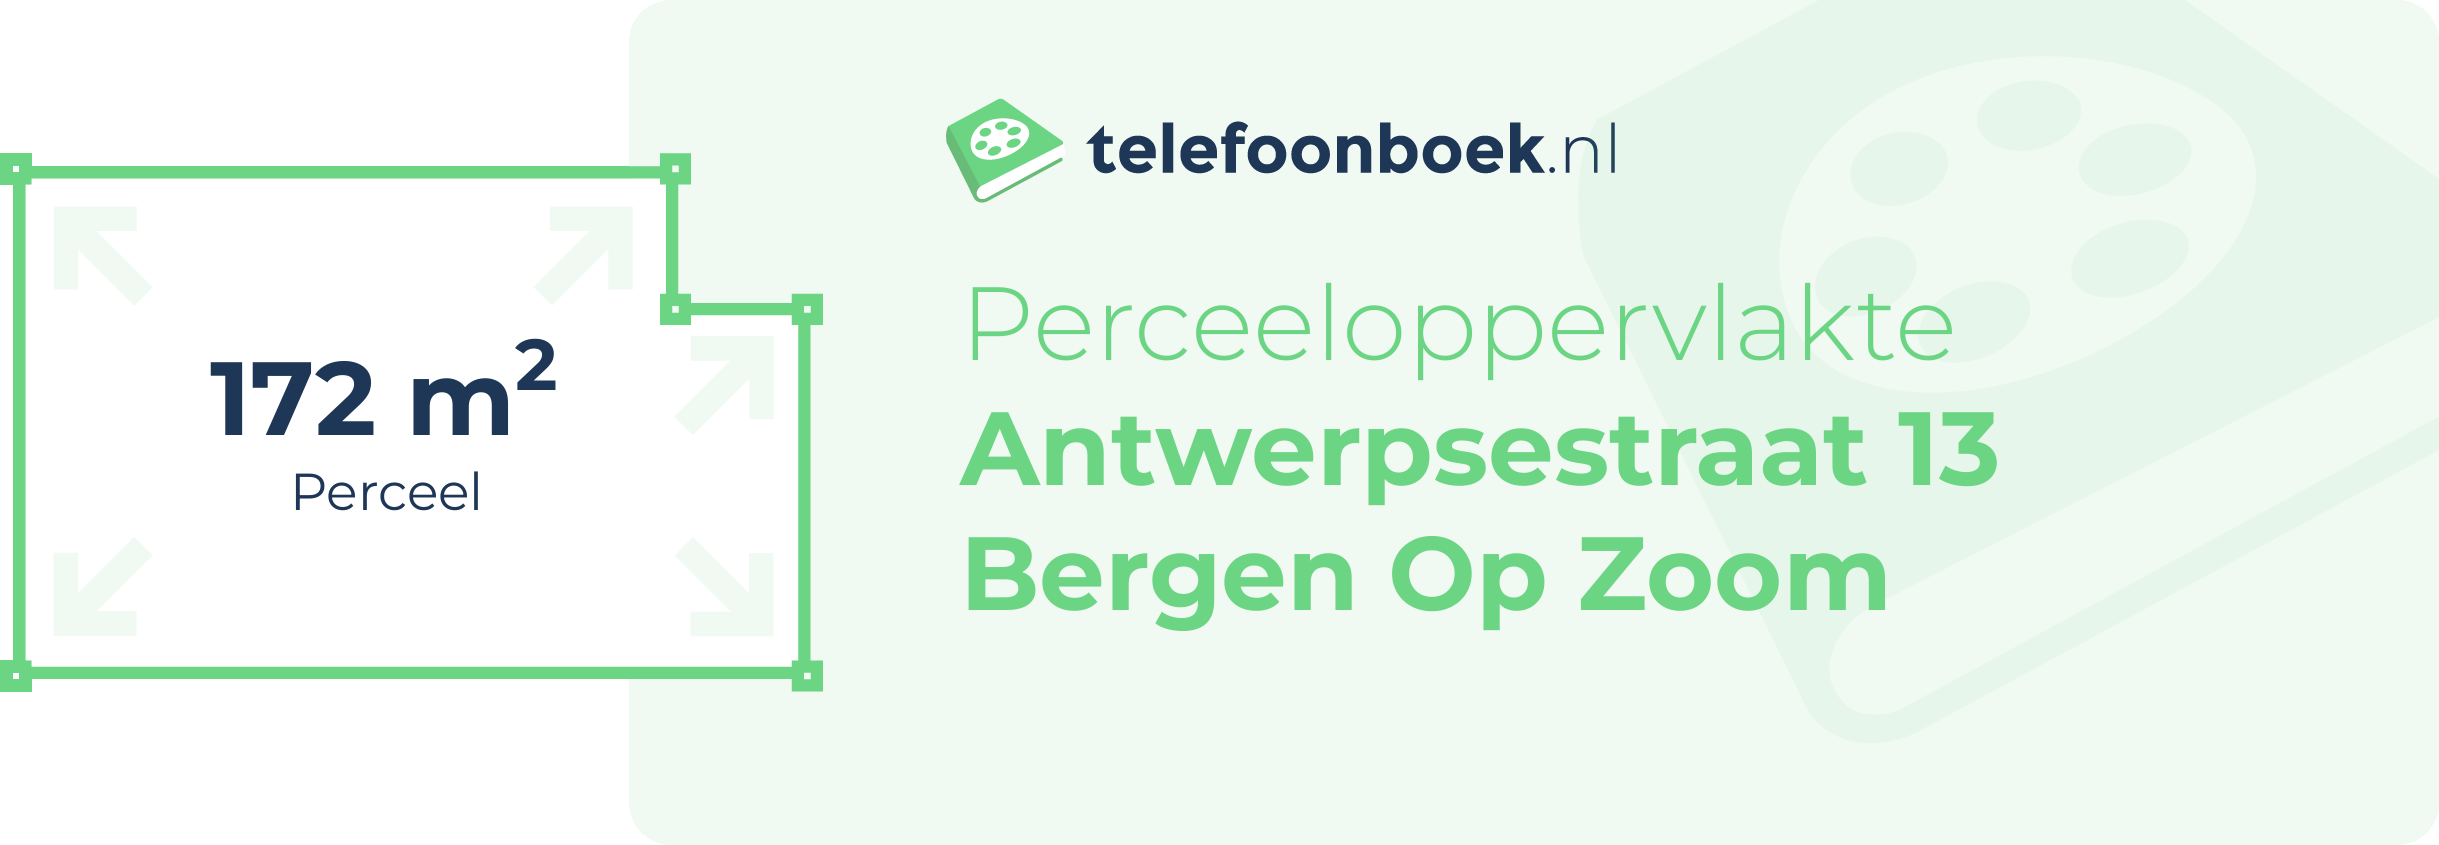 Perceeloppervlakte Antwerpsestraat 13 Bergen Op Zoom